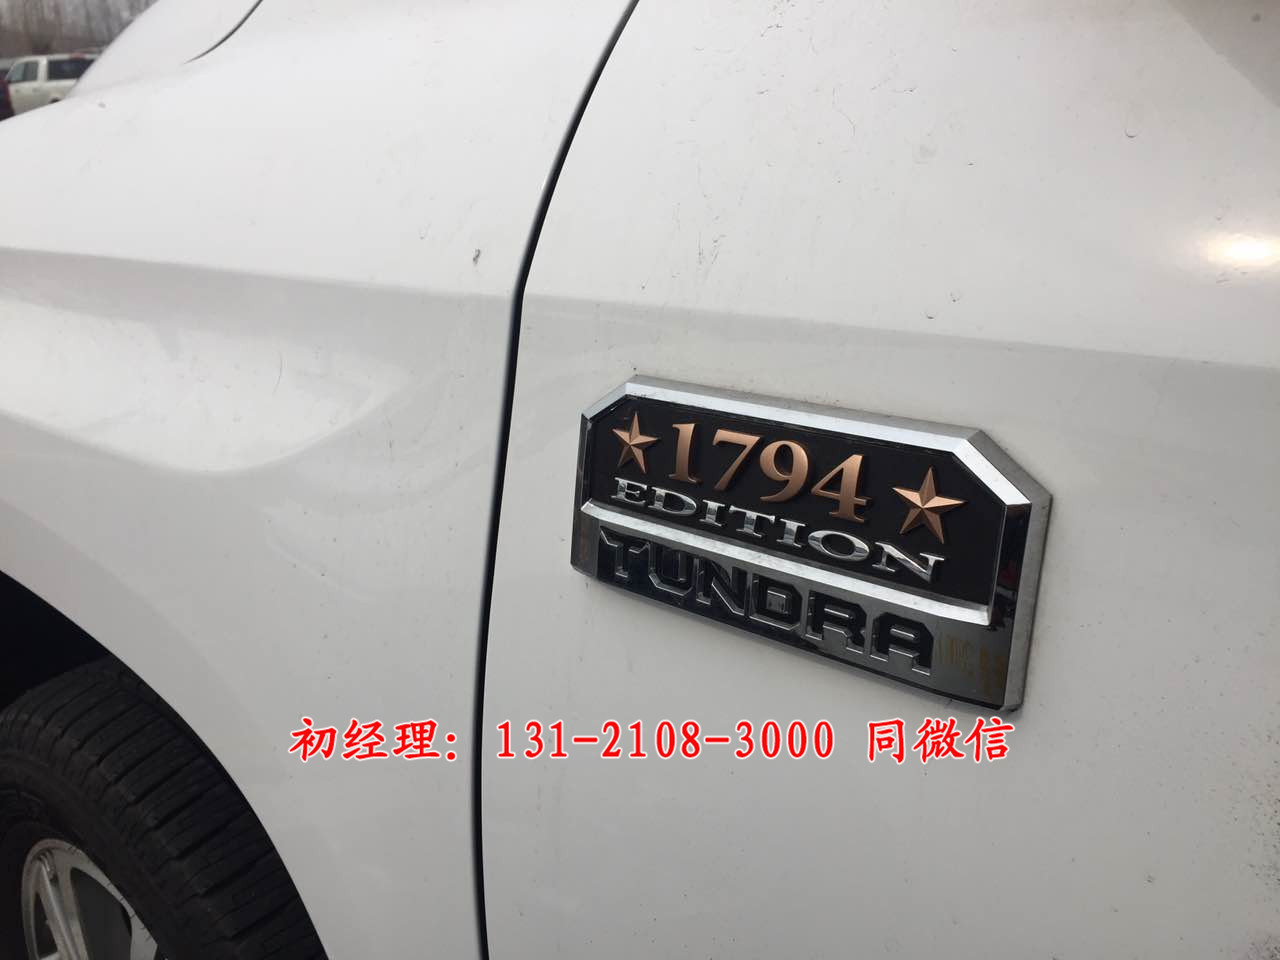 2017款美规丰田坦途1794限量版北京现车